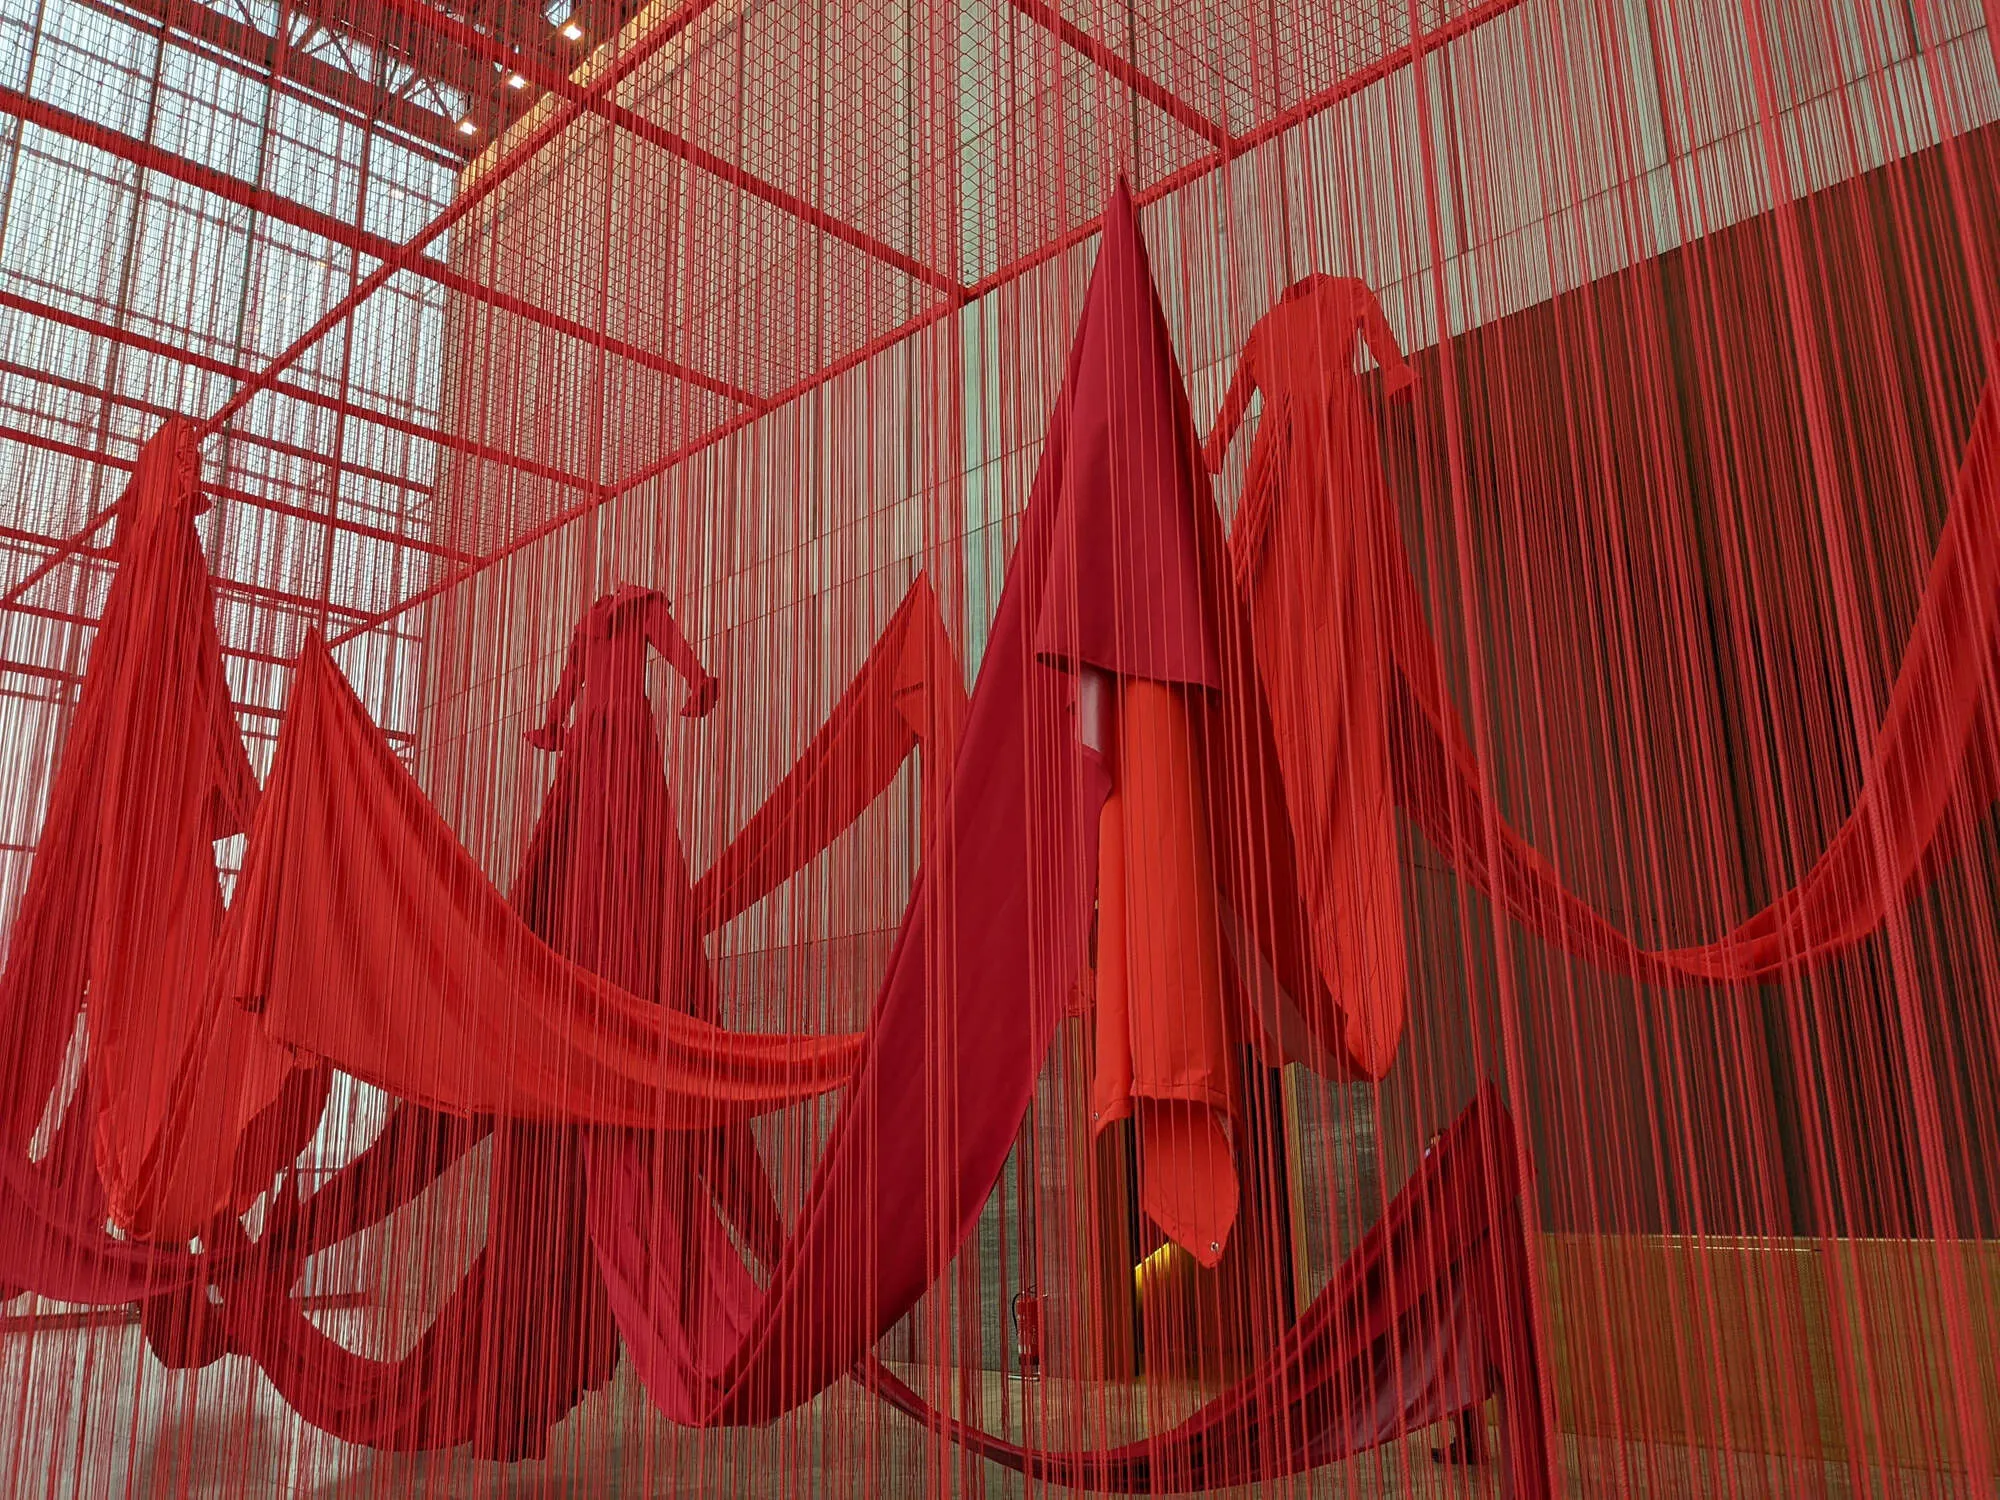 Großräumiges Kunstwerk mit roten Kleidern und Fäden